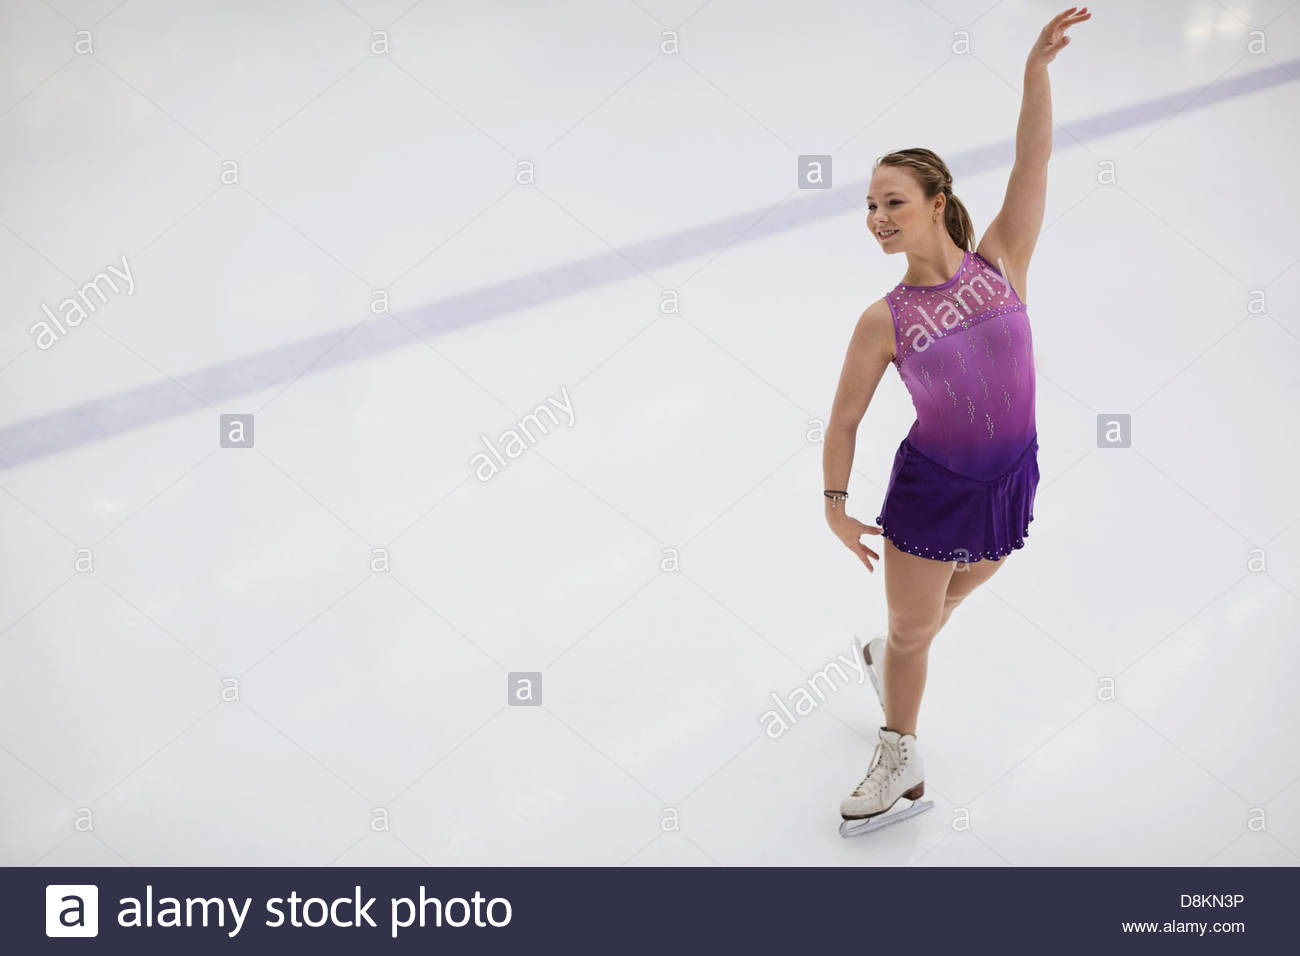 La patineuse artistique féminine dans les opérations routinières de patinoire Banque D'Images